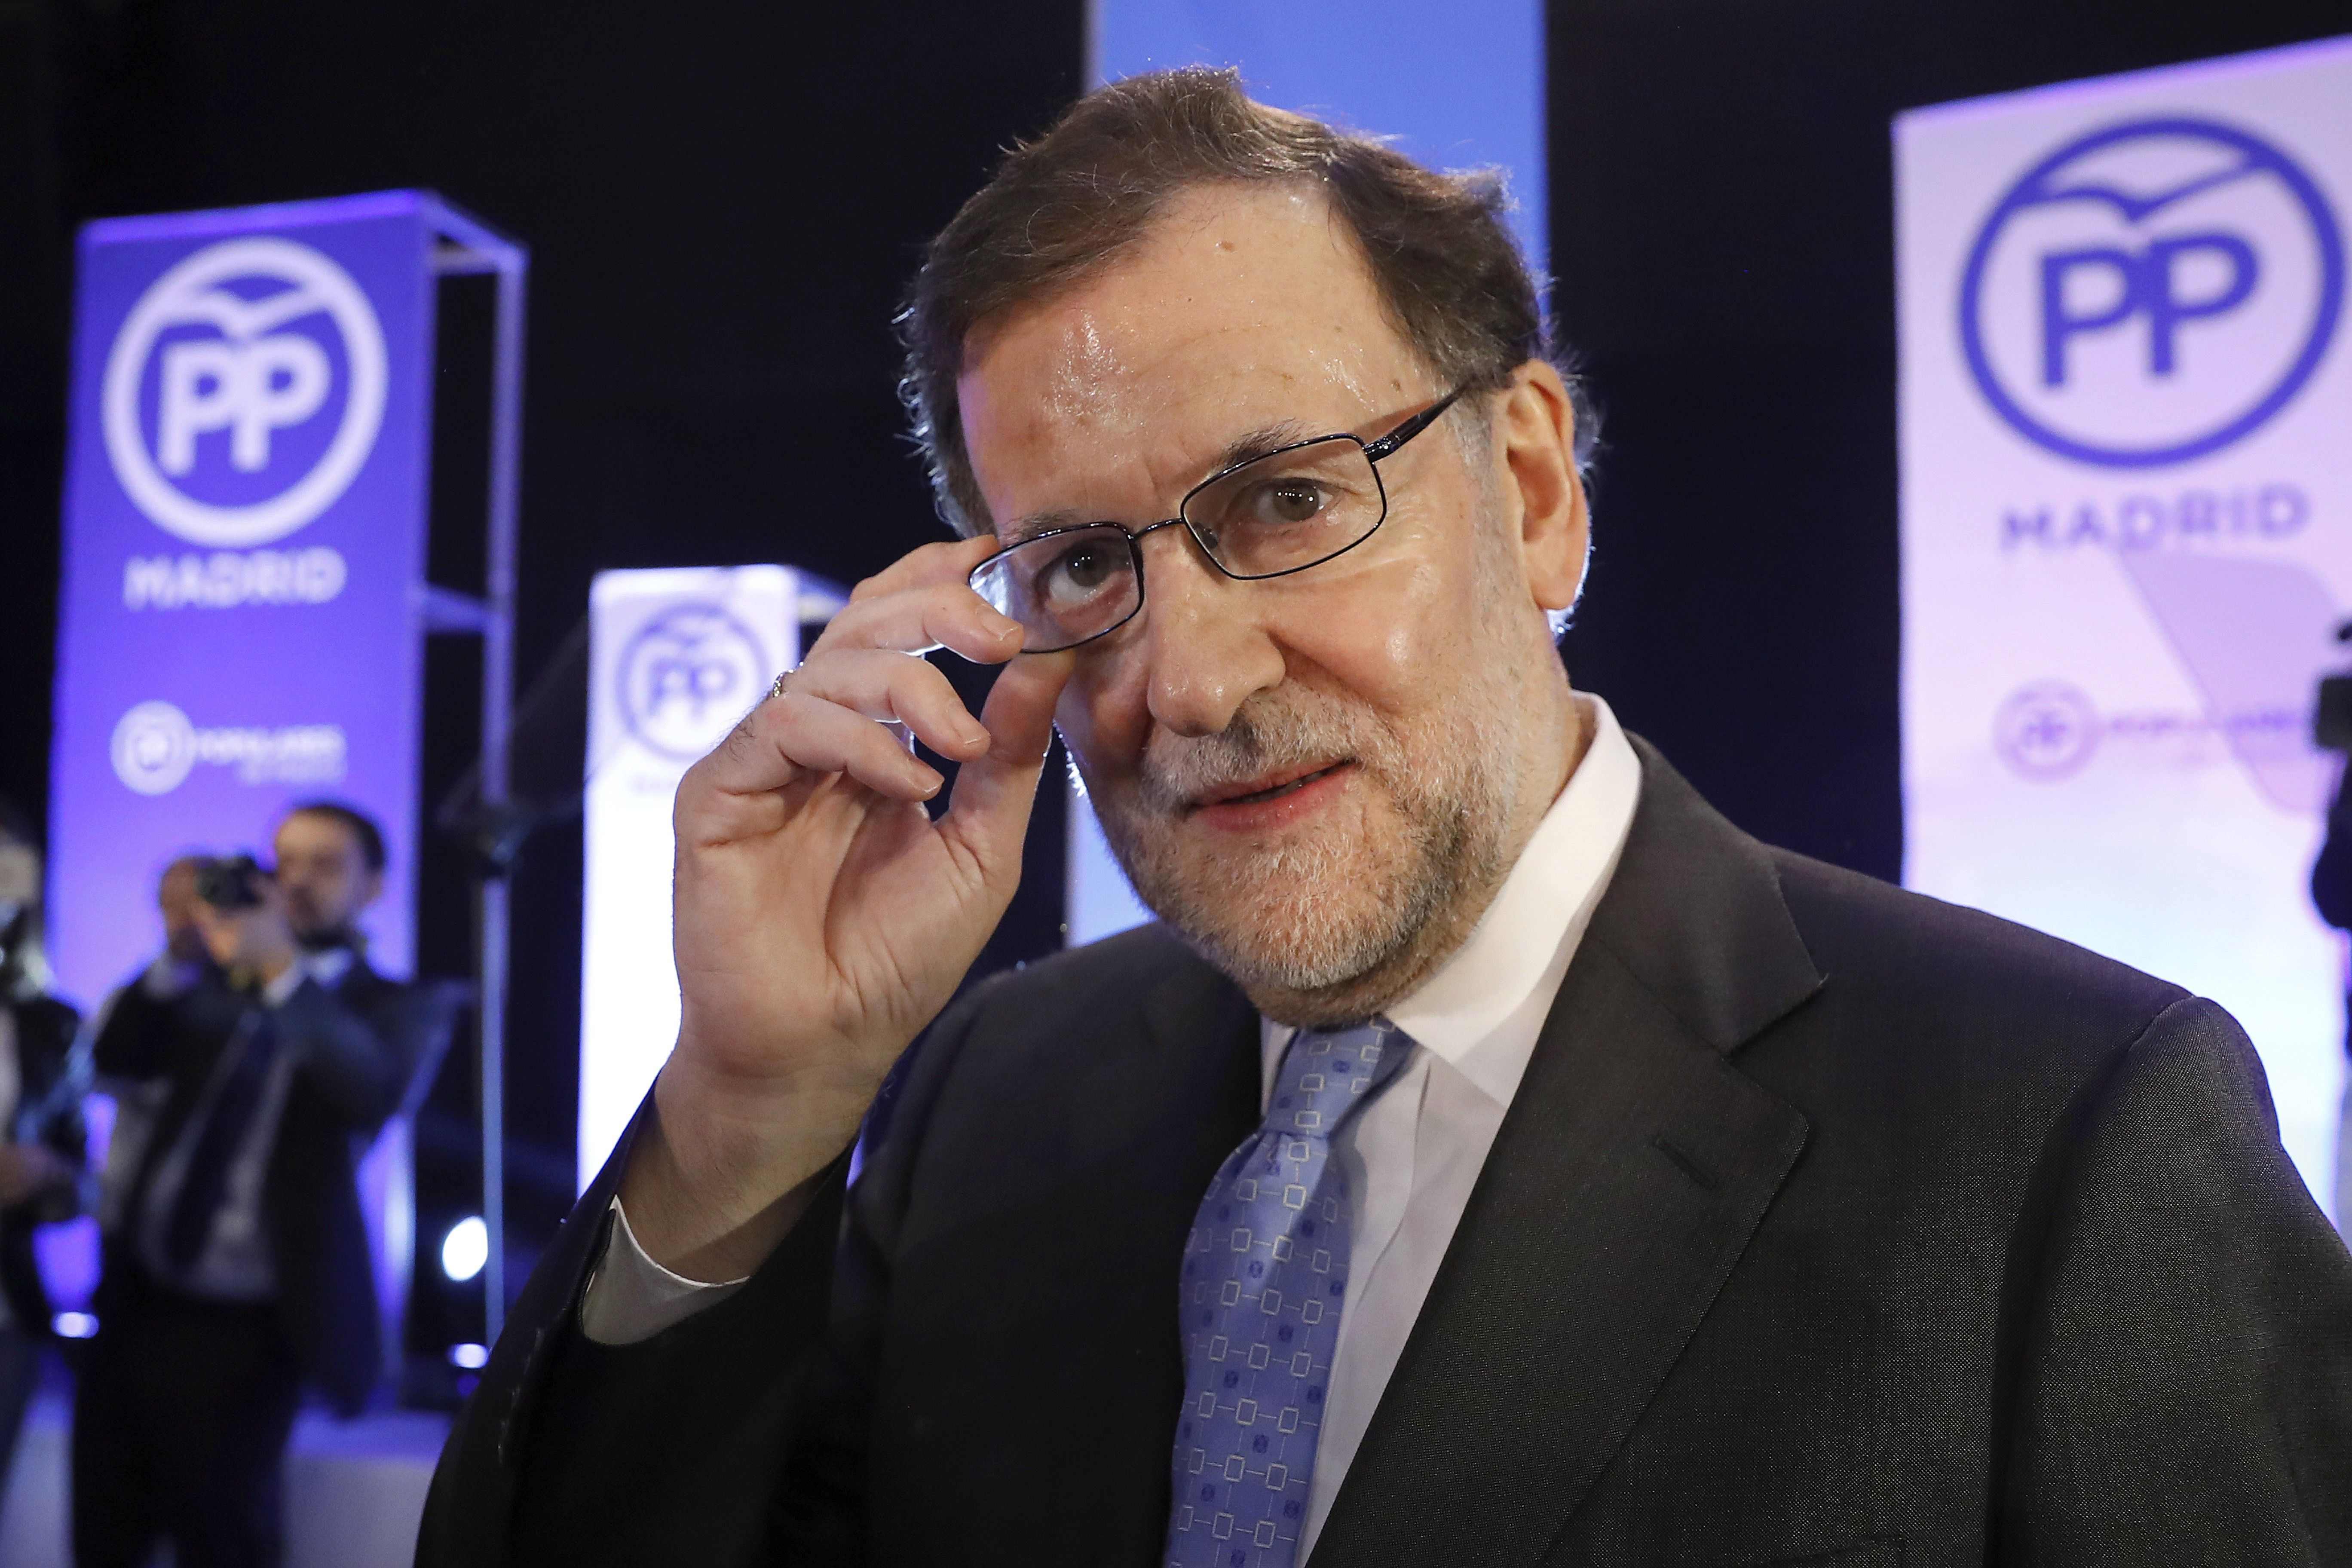 La broma sobre el muro catalán de Rajoy que triunfa en Whatsapp